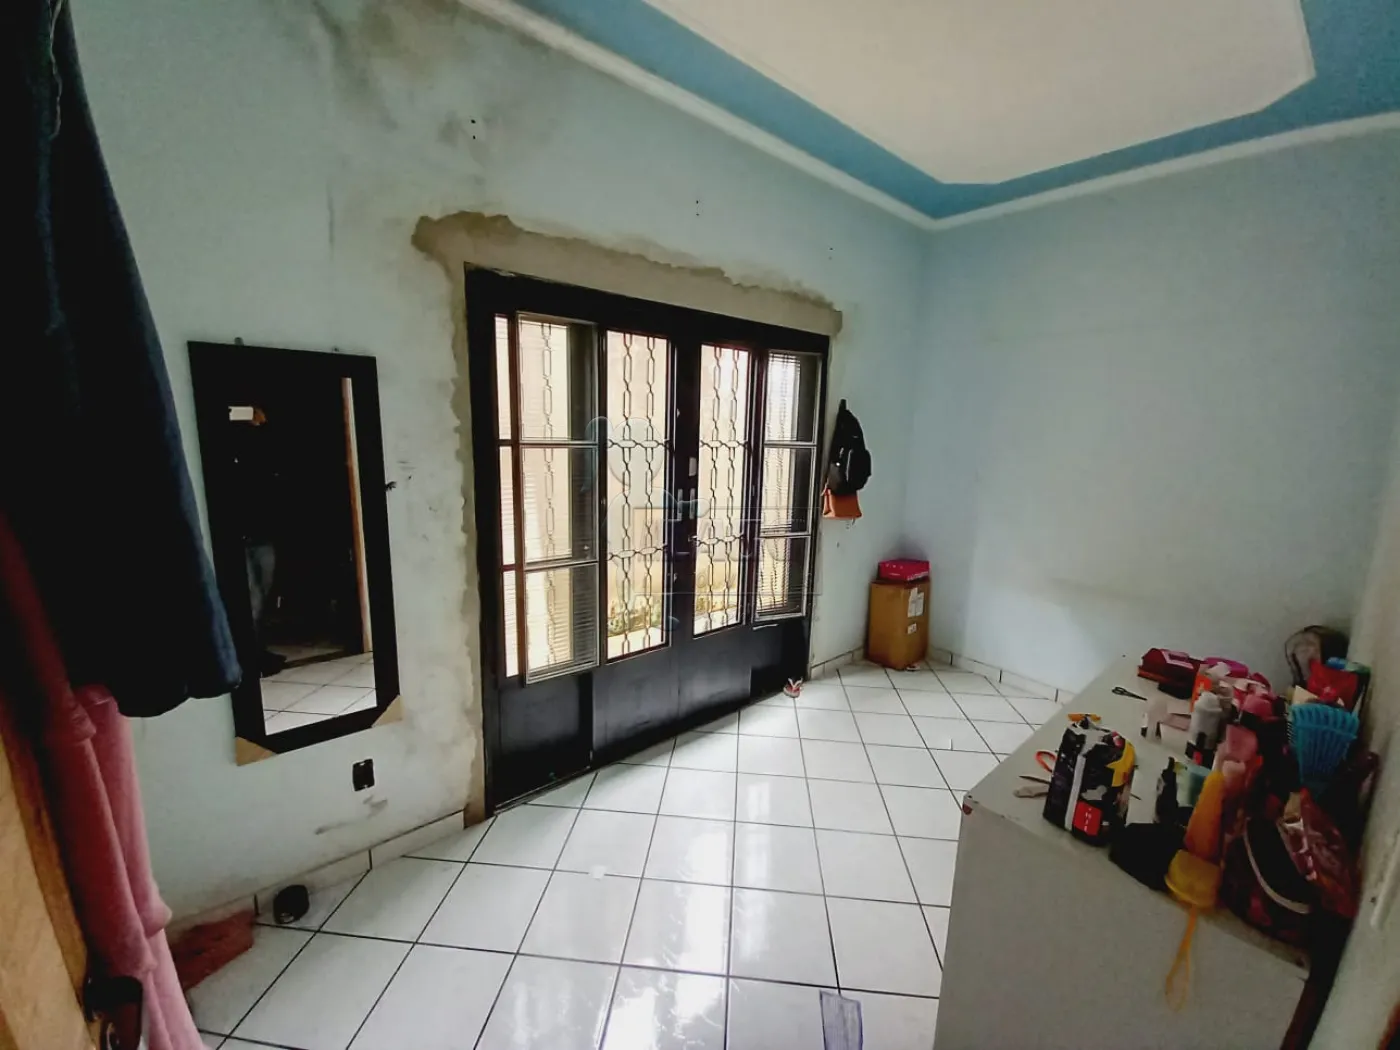 Comprar Casa / Padrão em Ribeirão Preto R$ 390.000,00 - Foto 11